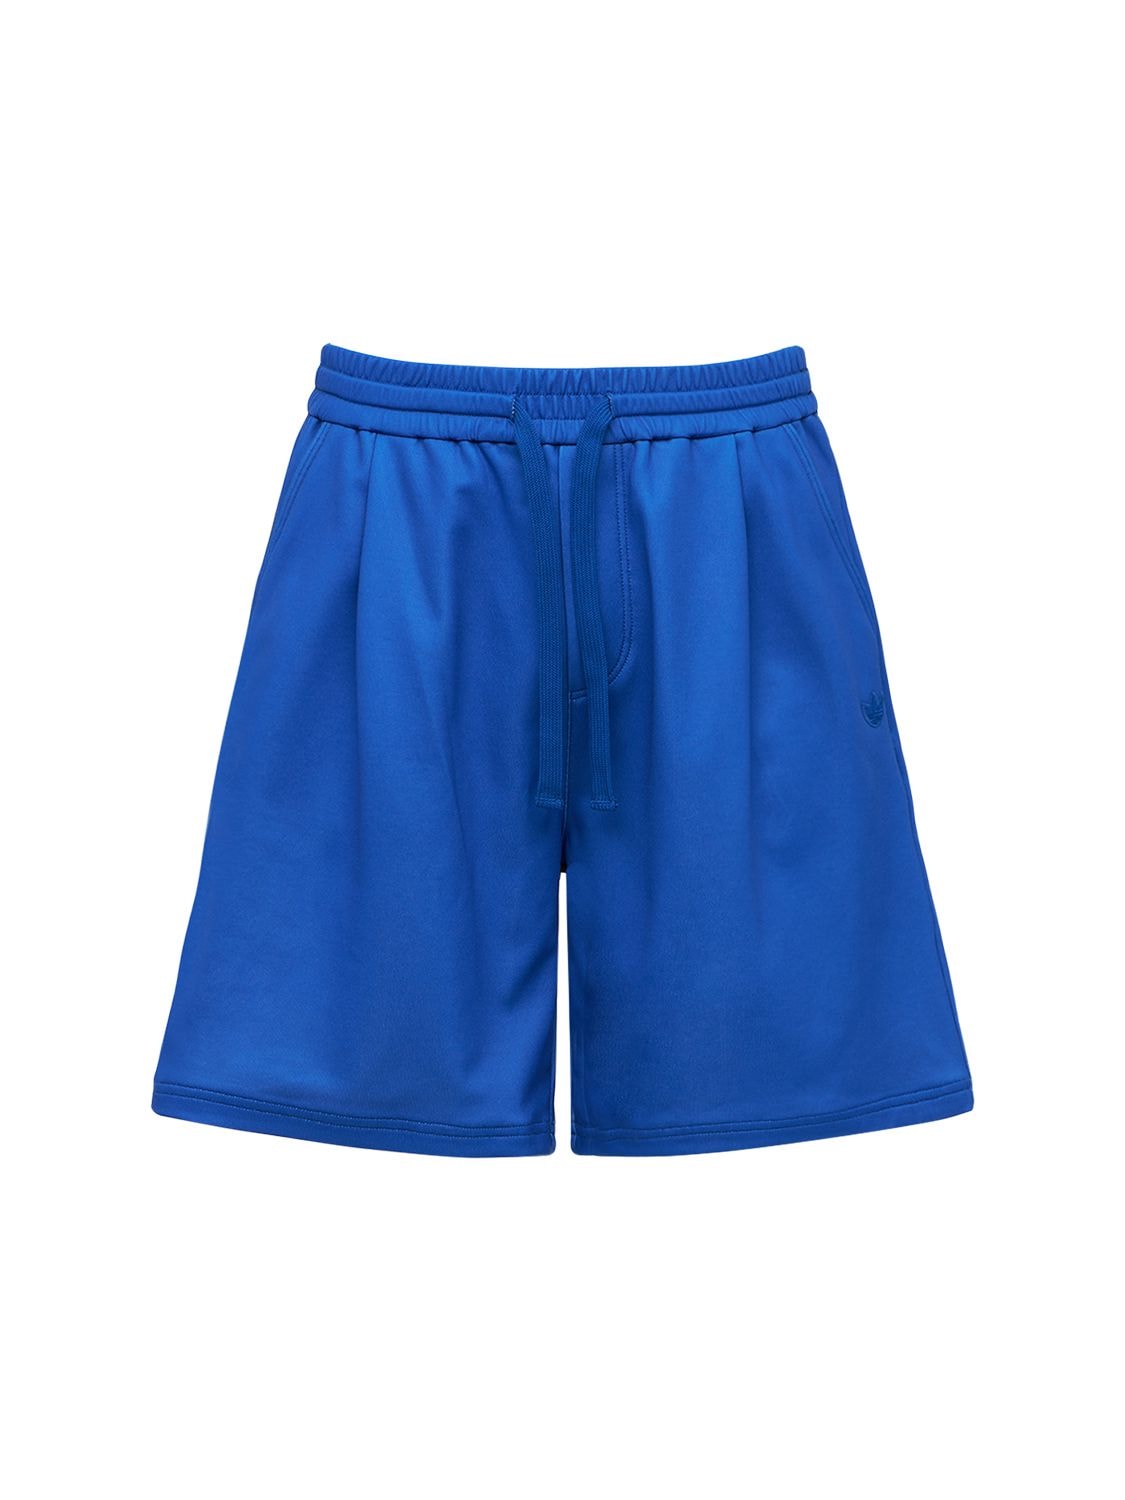 Shorts Blue Version Soccer - ADIDAS ORIGINALS - Modalova